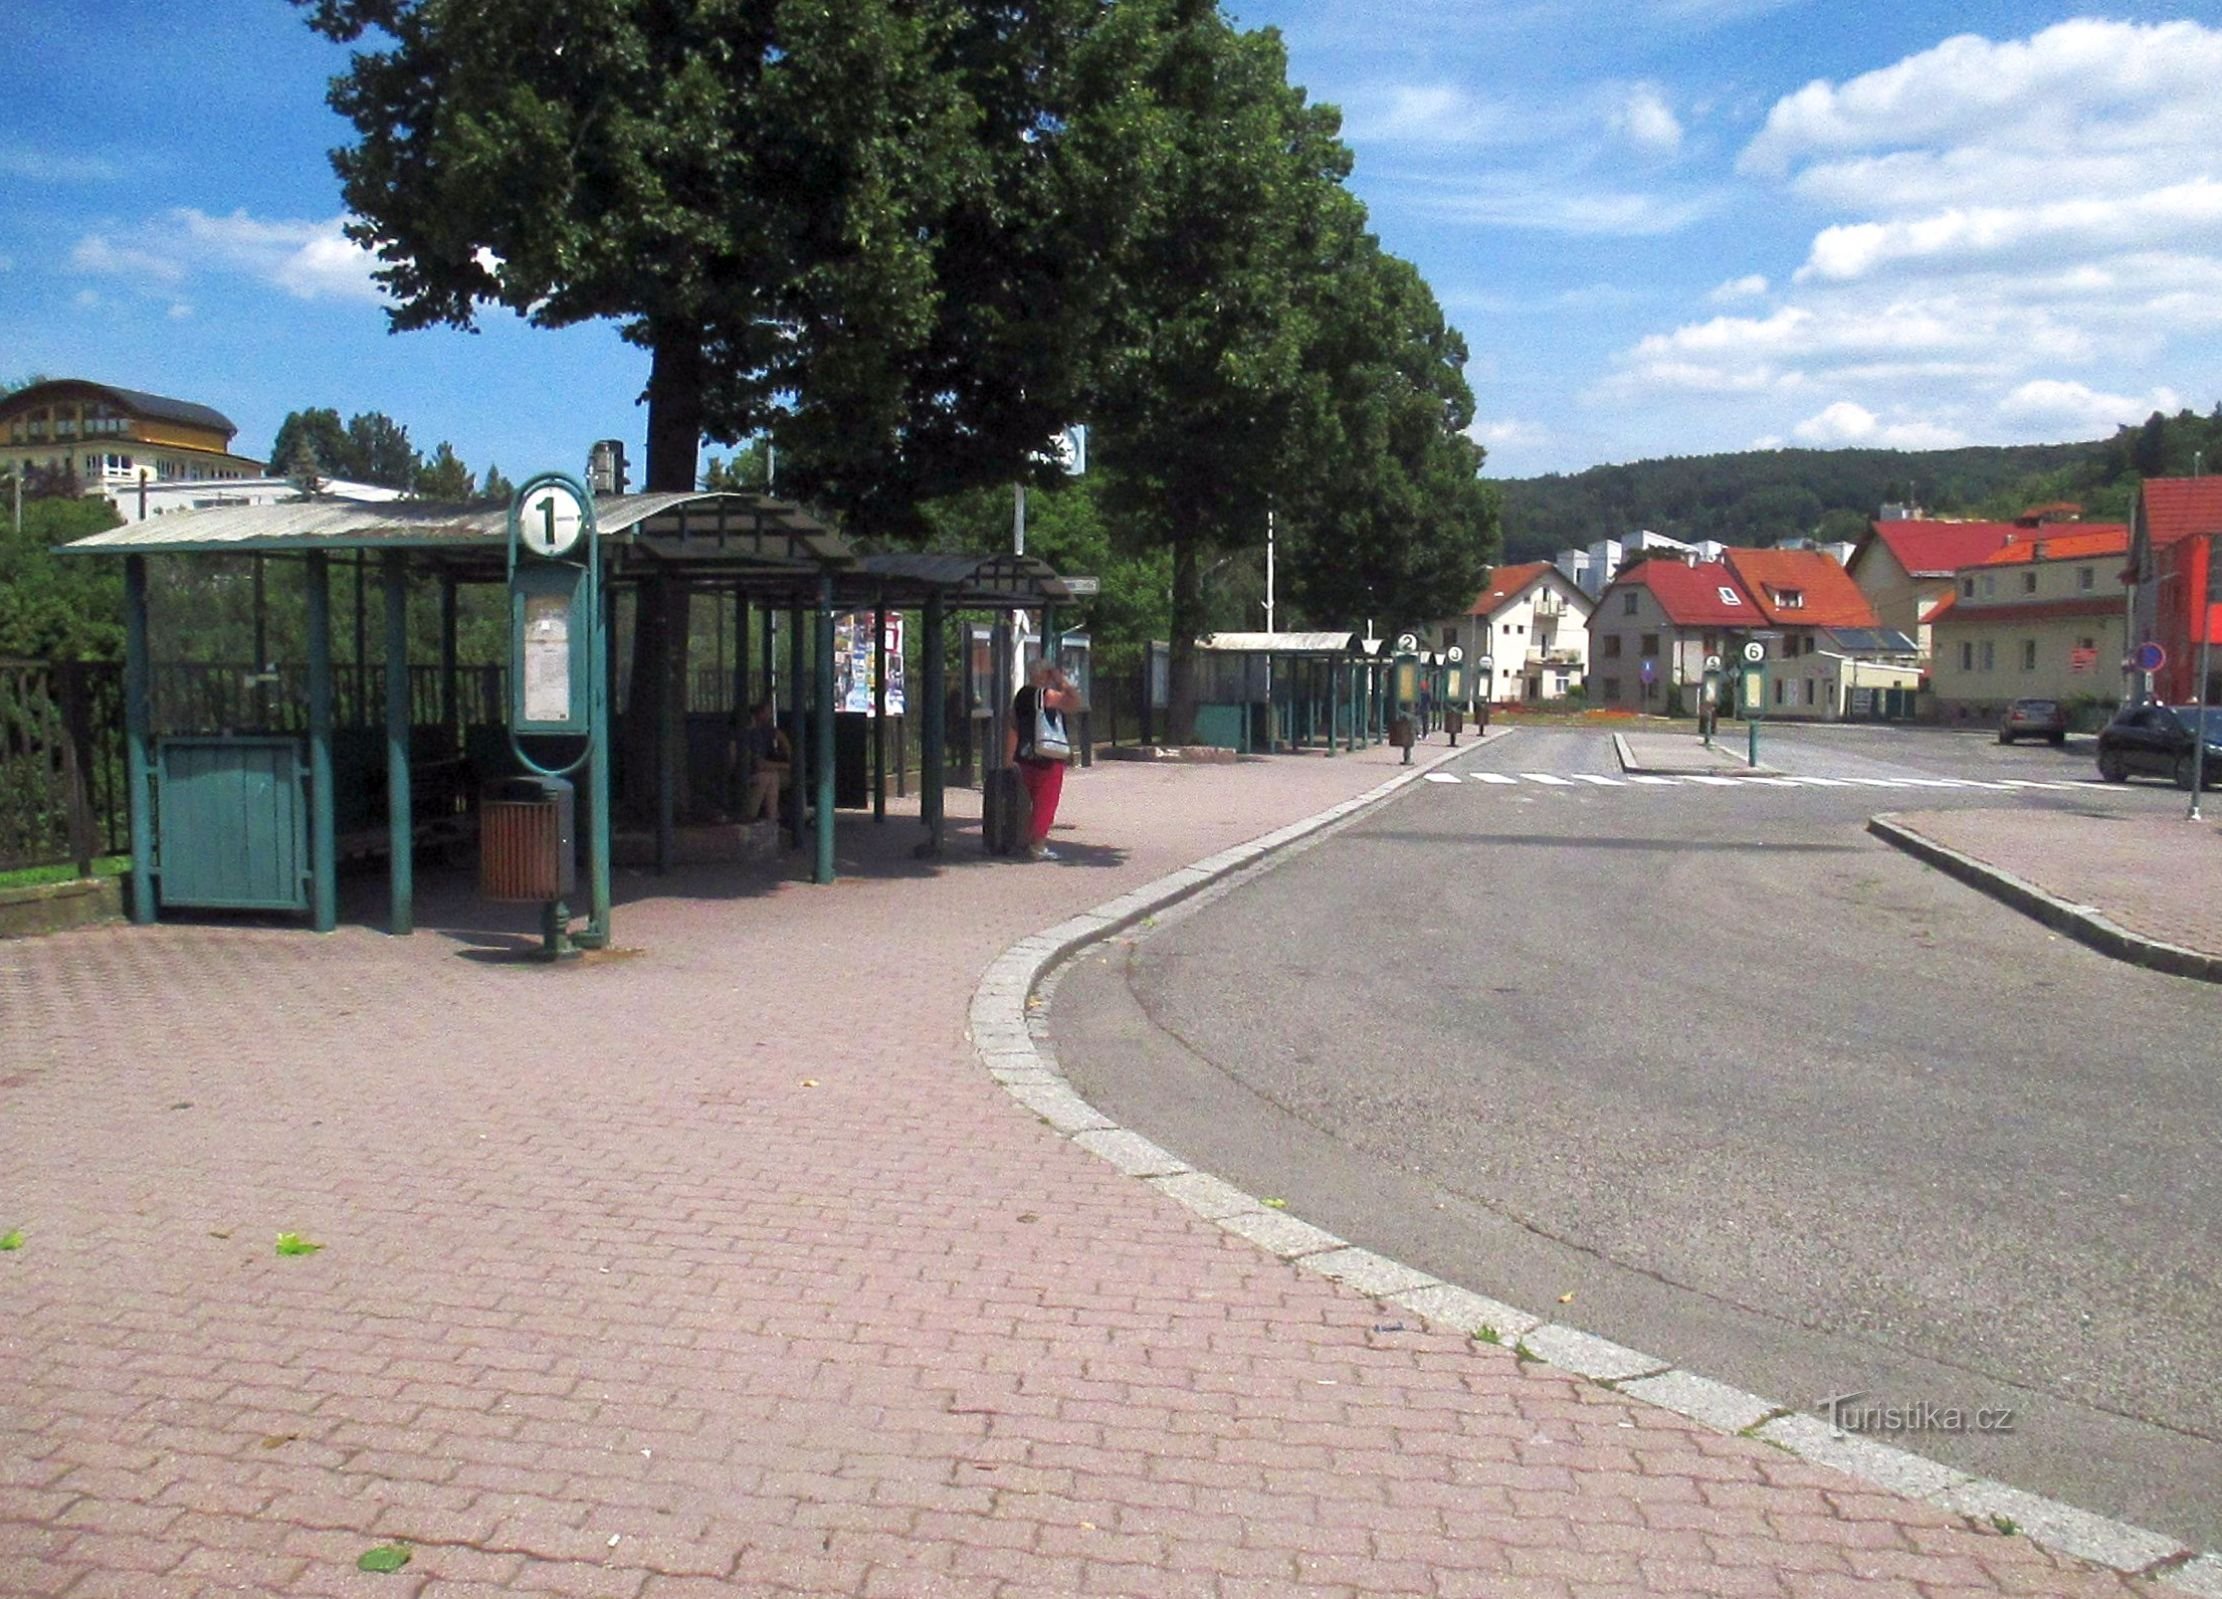 Luhačovice - dworzec autobusowy